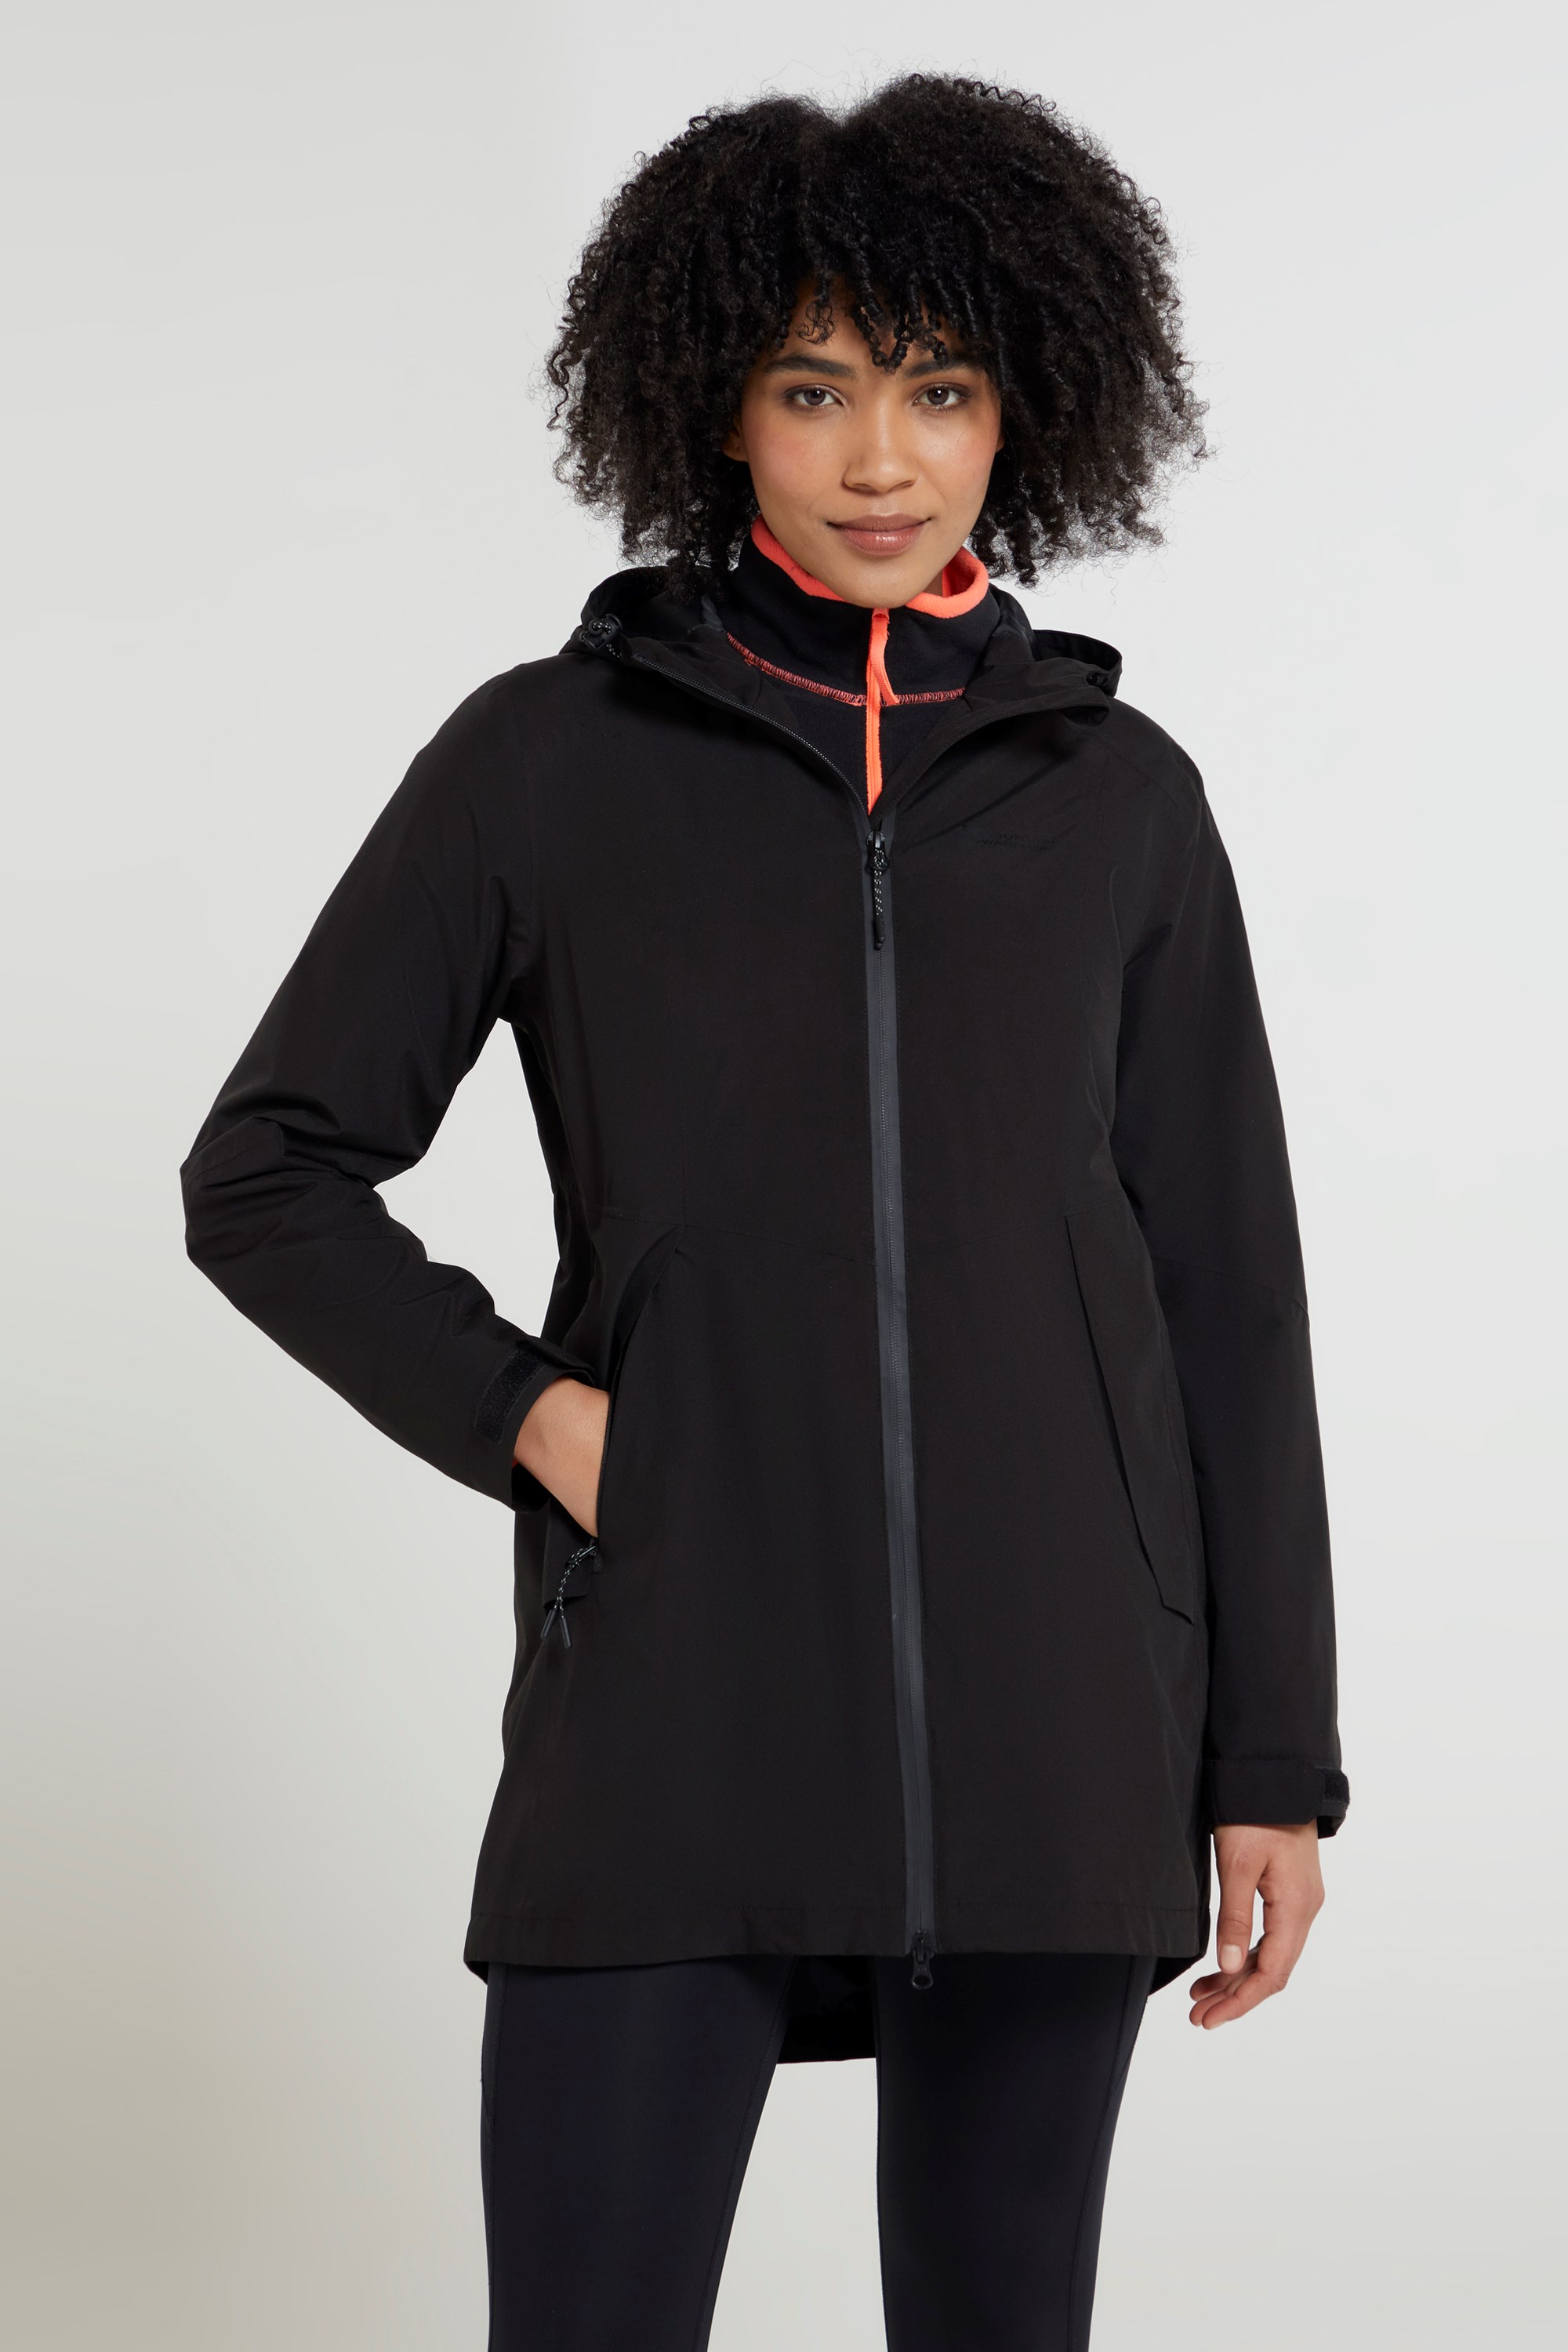 Hilltop II Womens Waterproof Jacket | Mountain Warehouse NZ